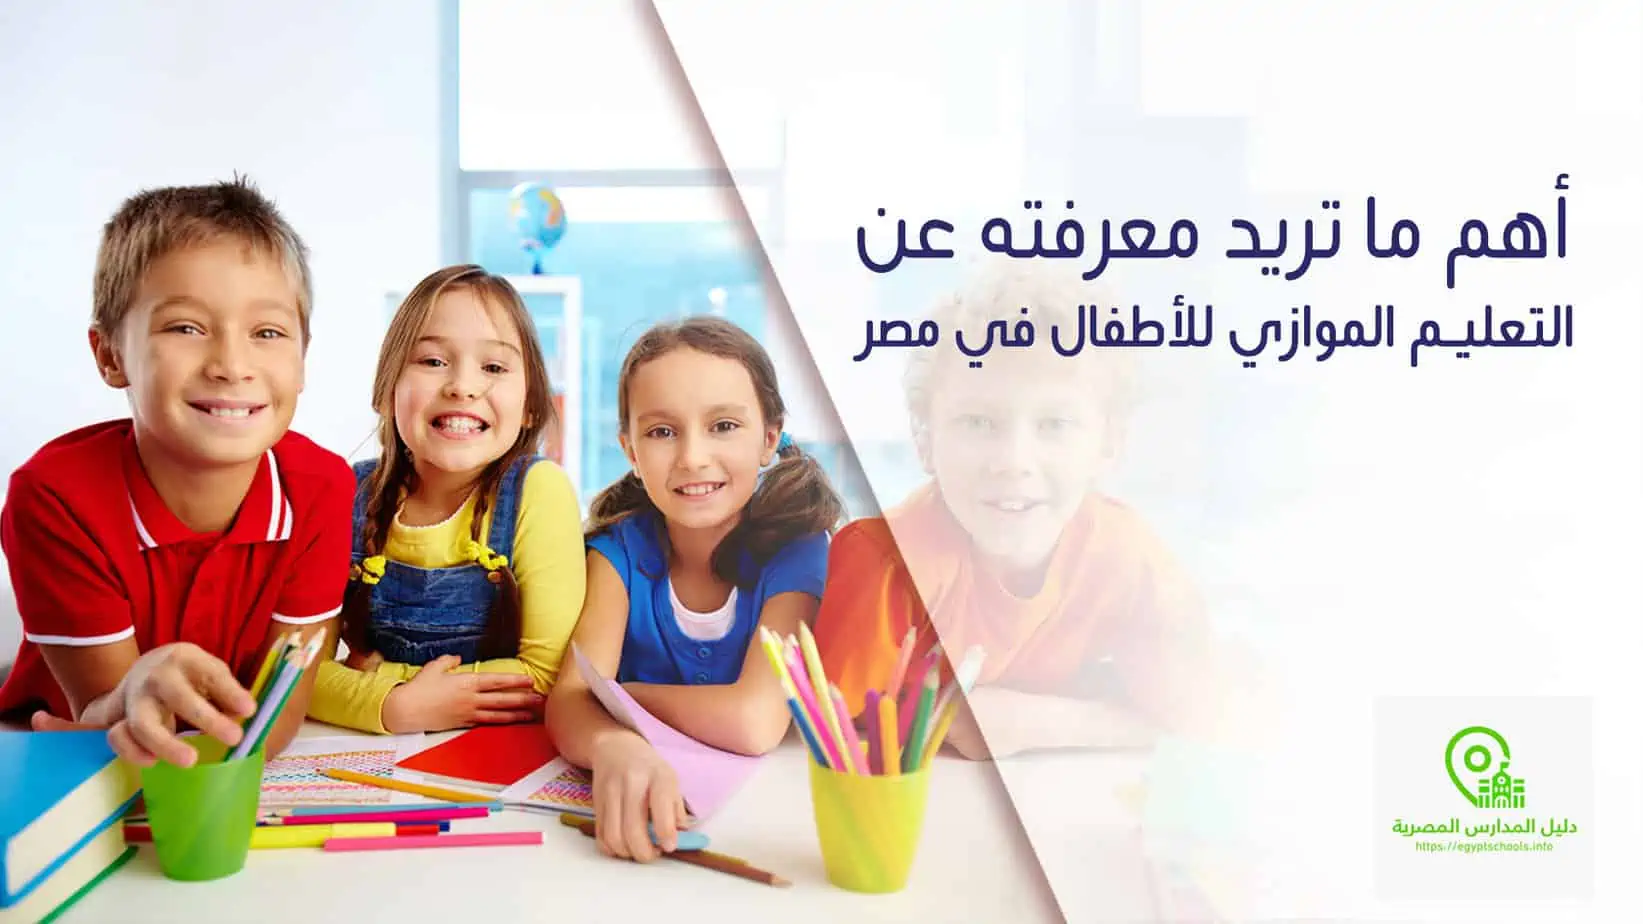 التعليم الموازي للأطفال في مصر